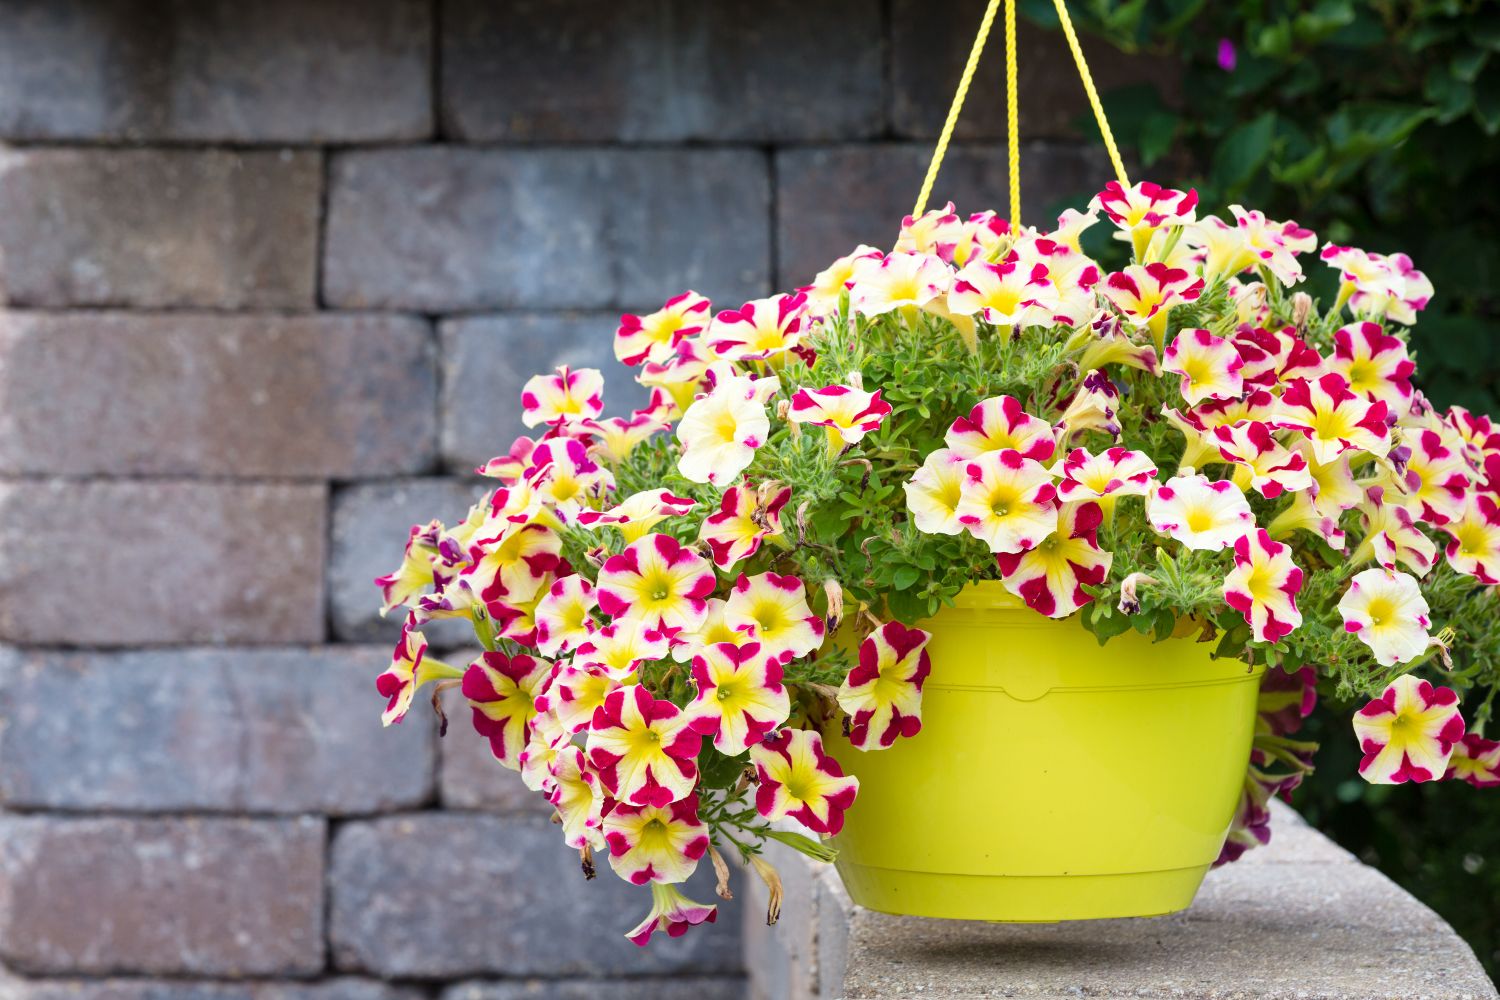 Petunia care tips: watering, pruning & more - Plantura